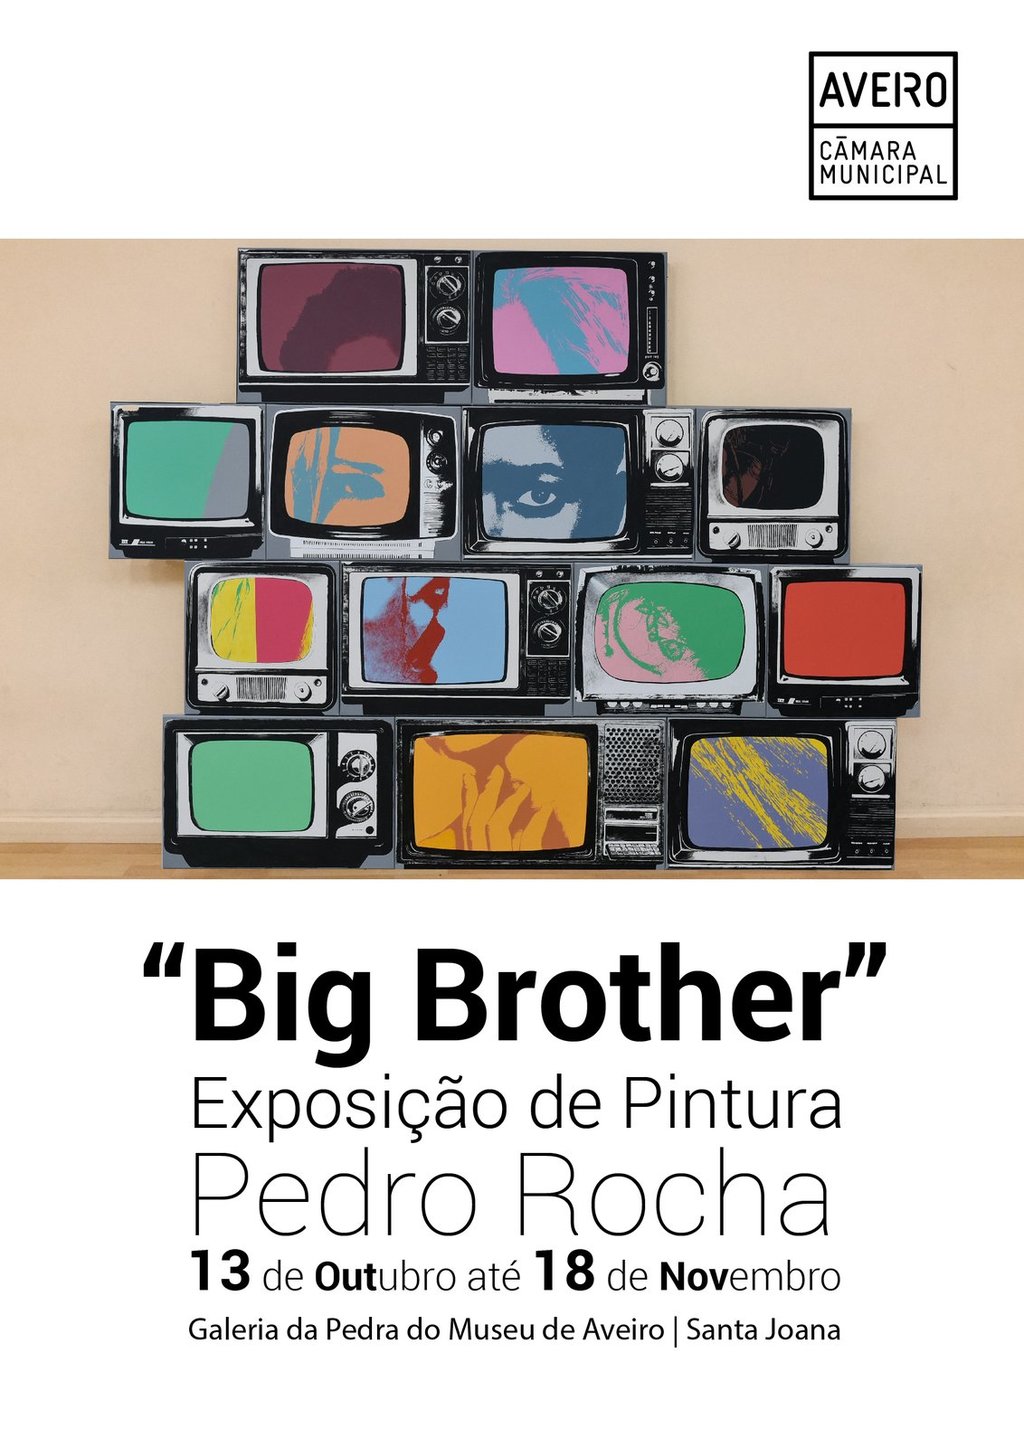 EXPOSIÇÃO “BIG BROTHER” NO MUSEU DE AVEIRO